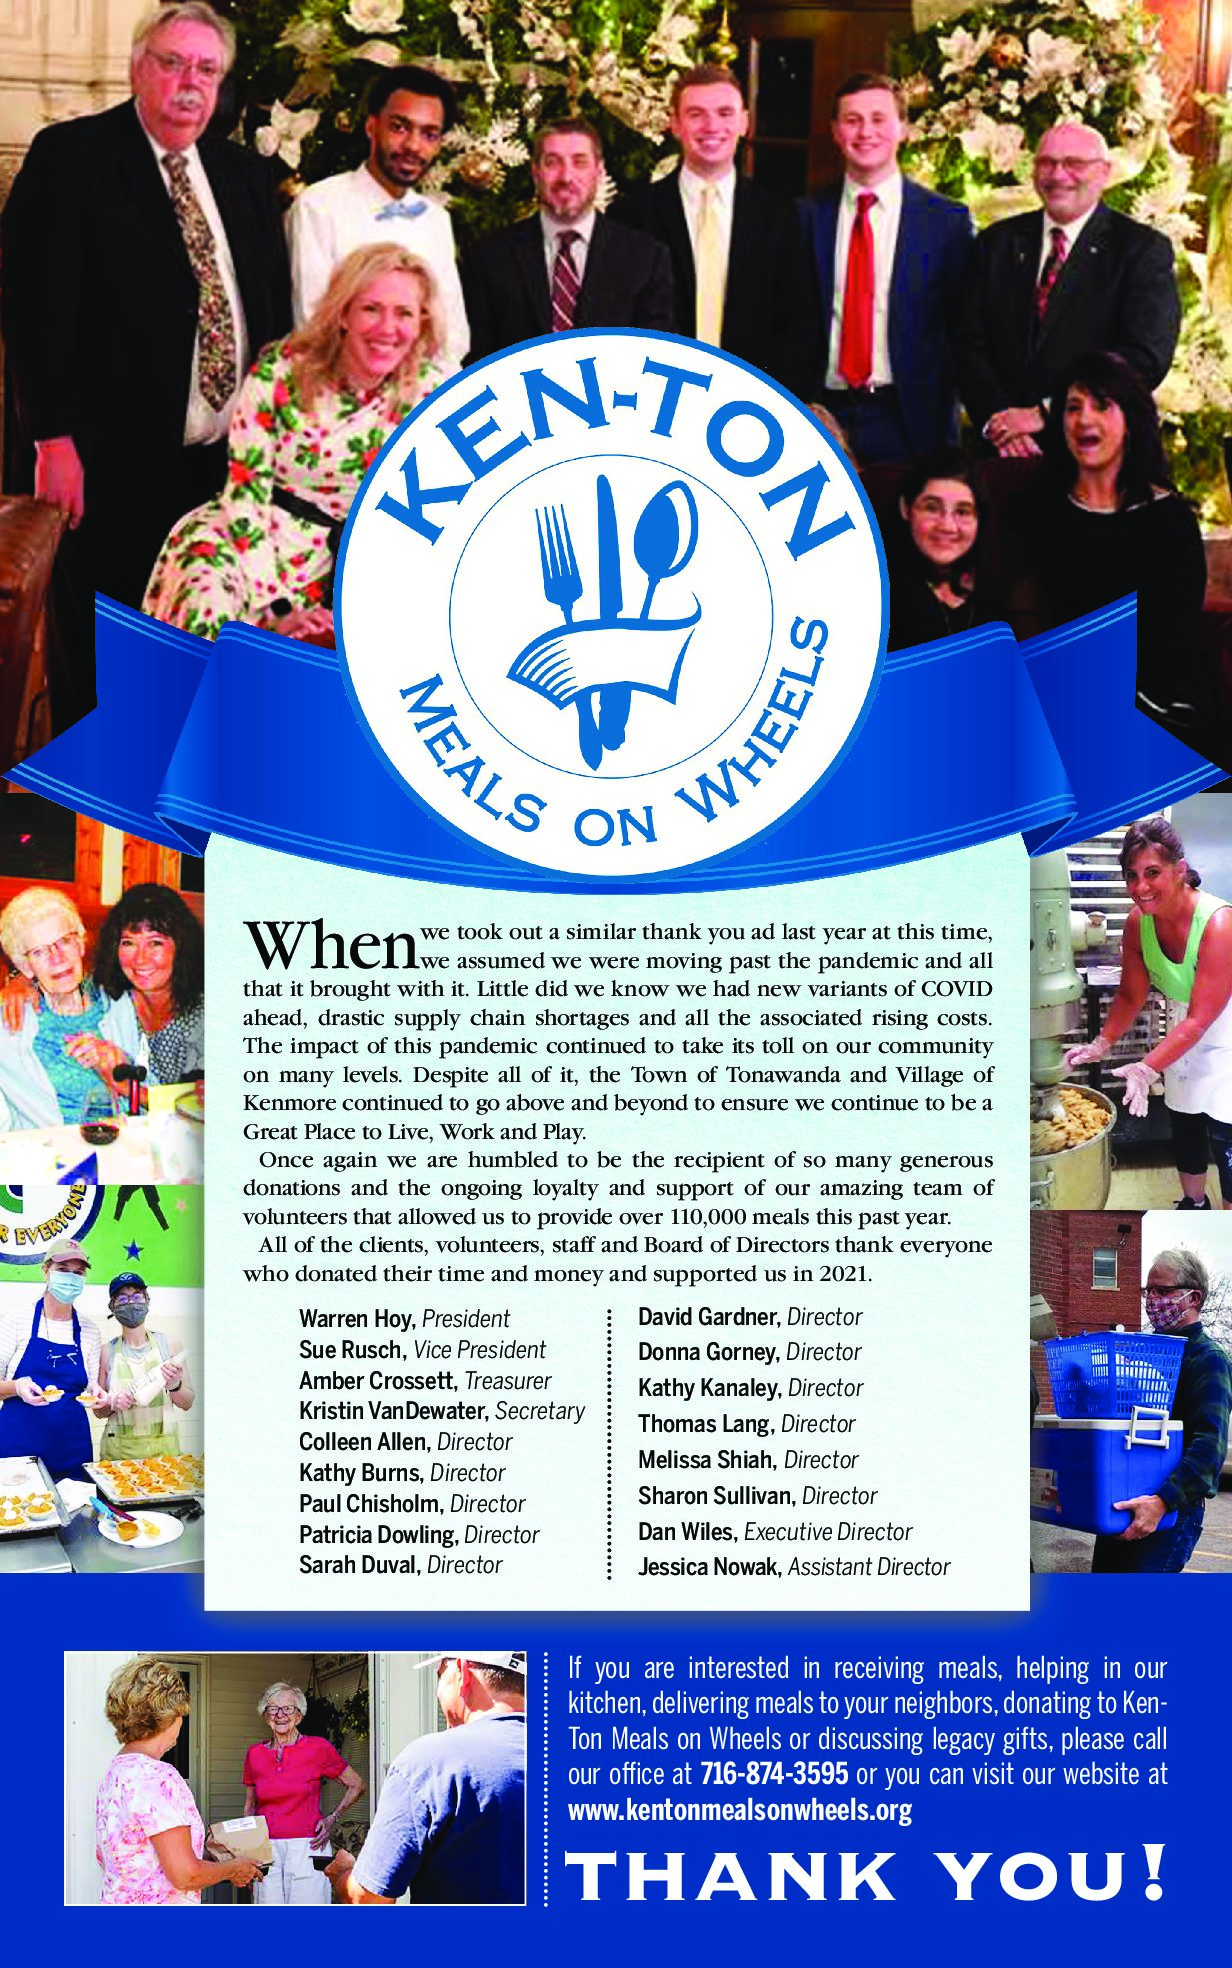 Ken-Ton Meals on Wheels Volunteer